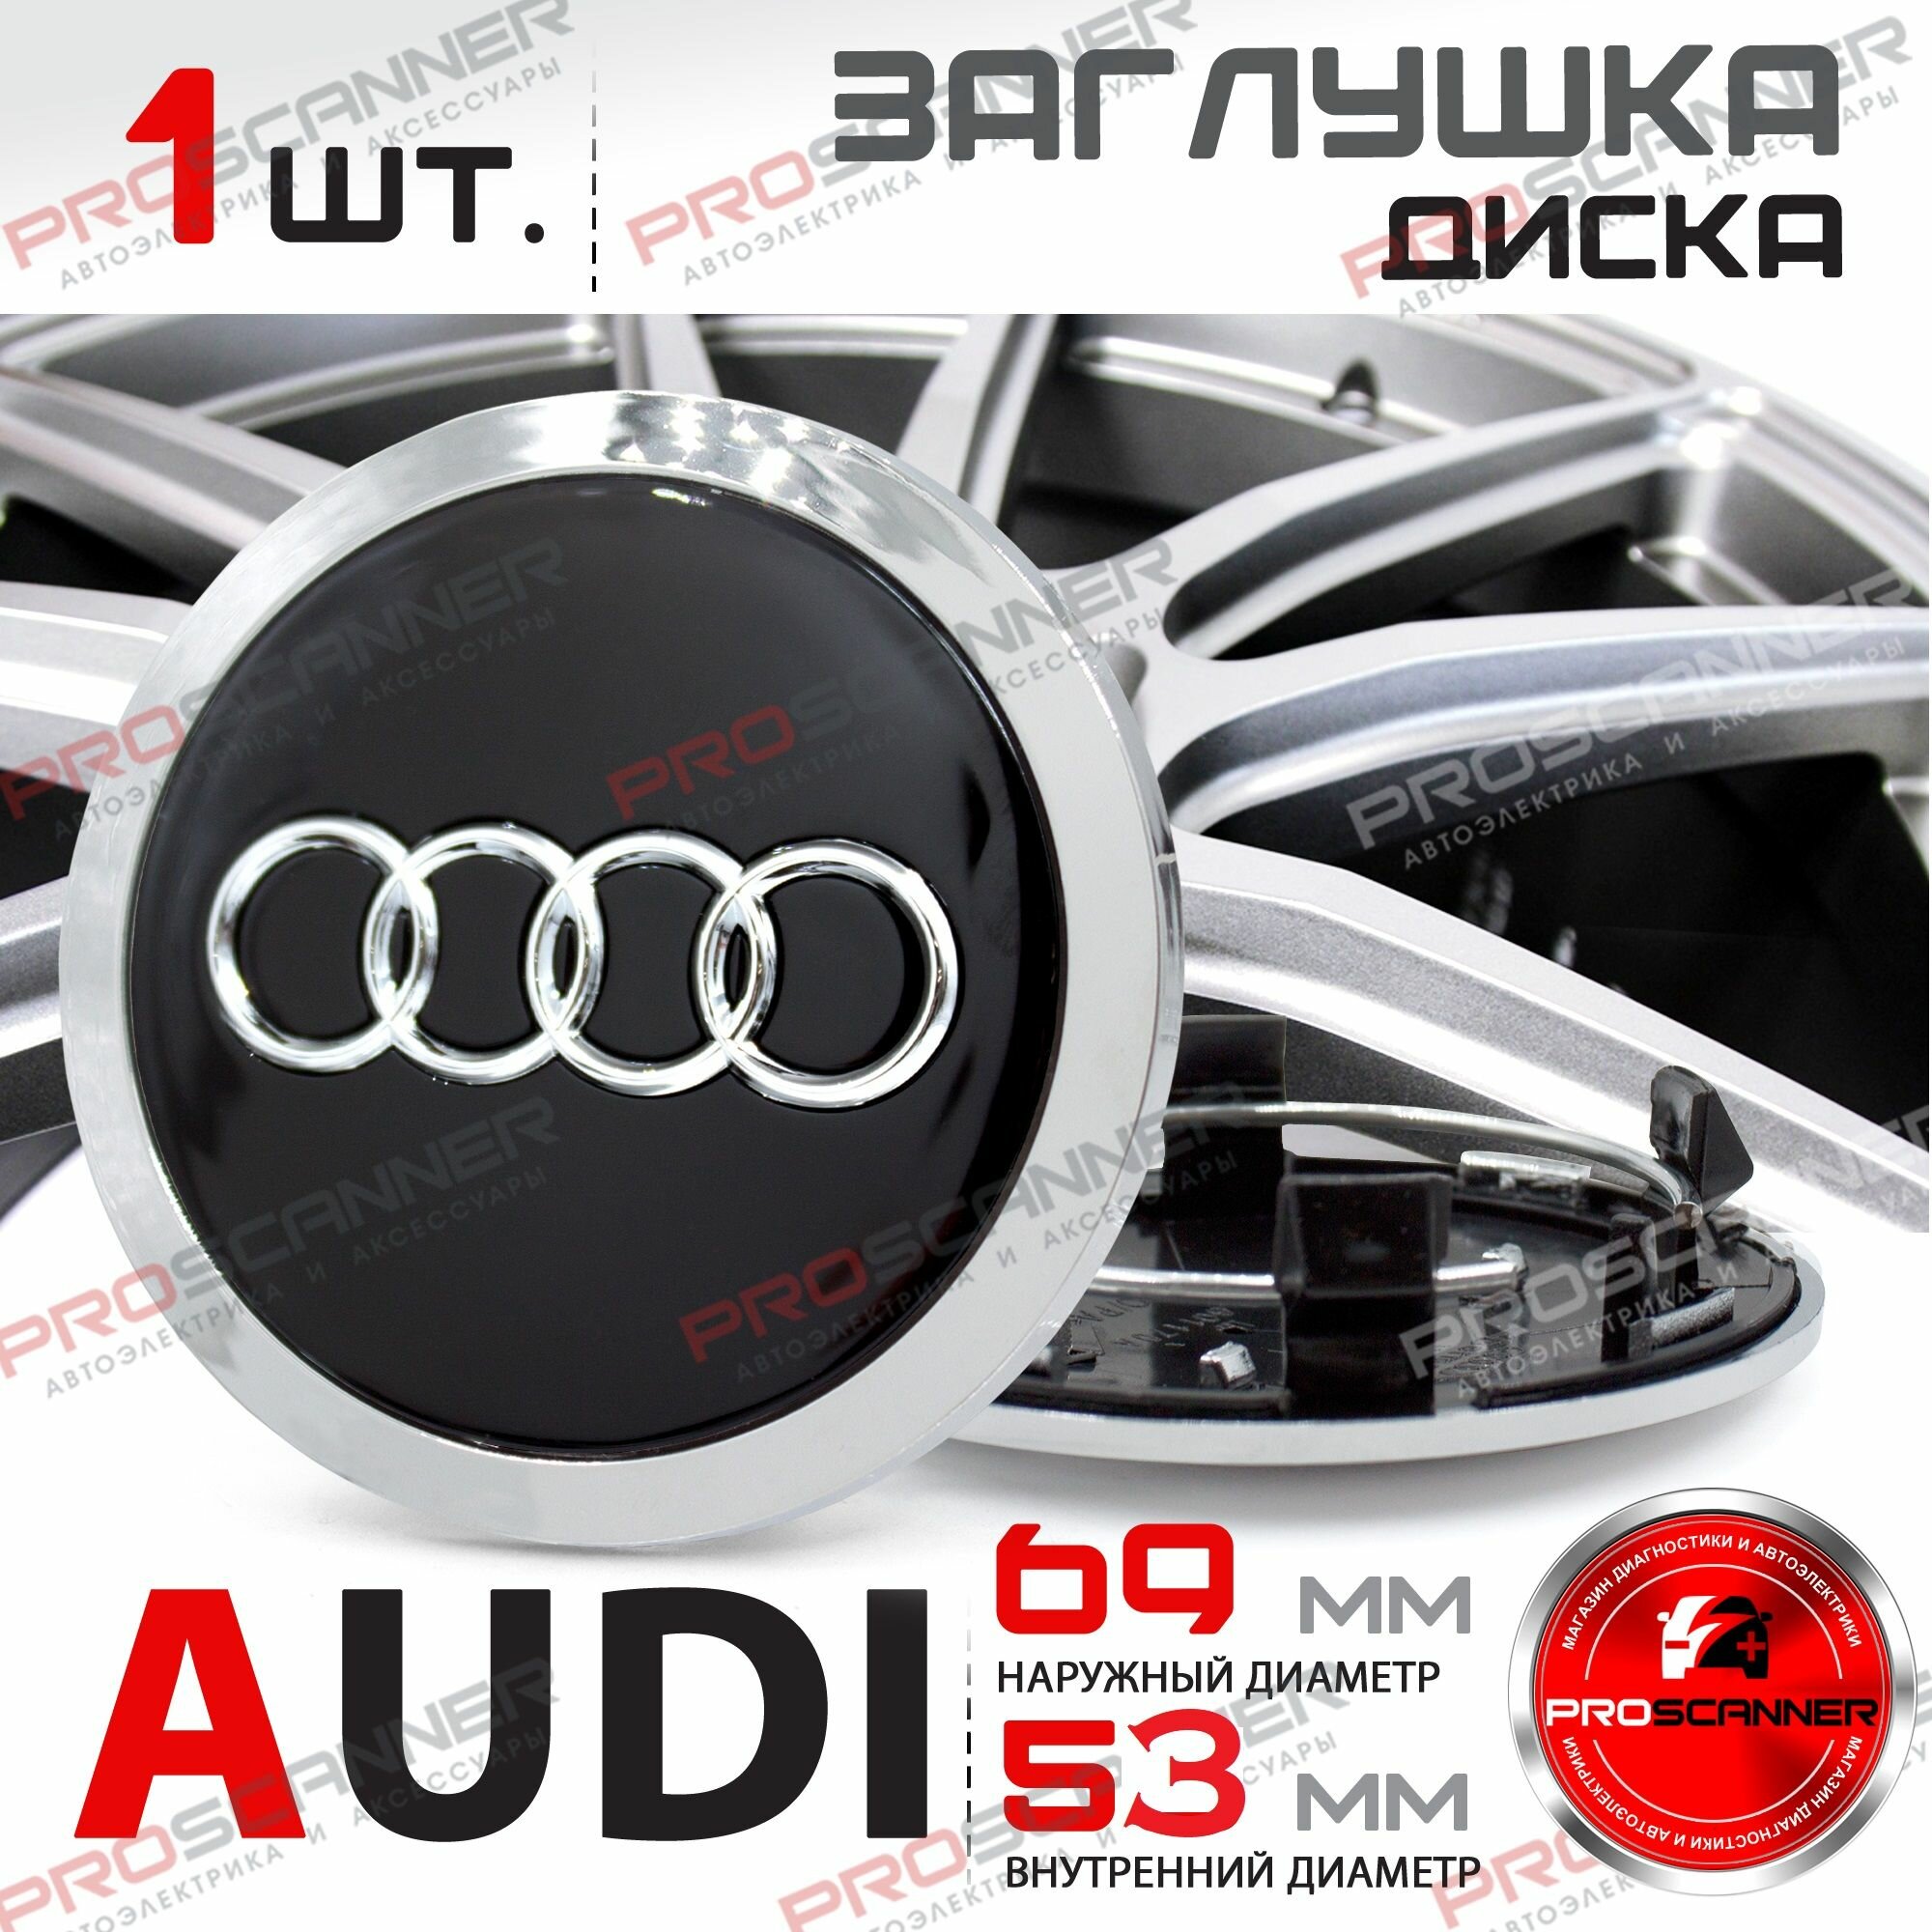 Колпачок заглушка на литой диск колеса для Audi Ауди 69мм 4B0601170 - 1 штука, черный